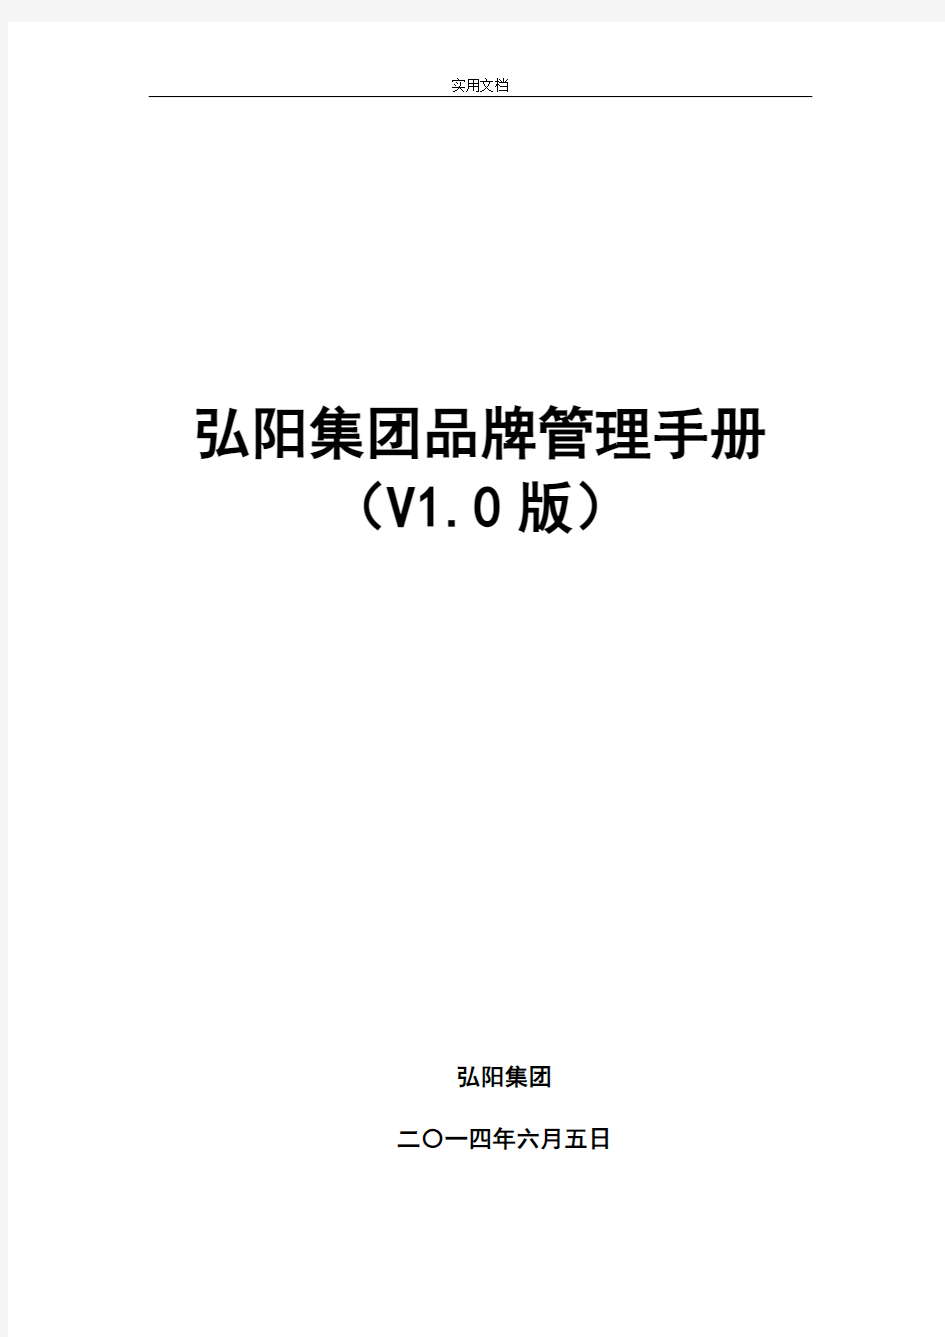 弘阳集团品牌管理系统手册簿(V1.0版)